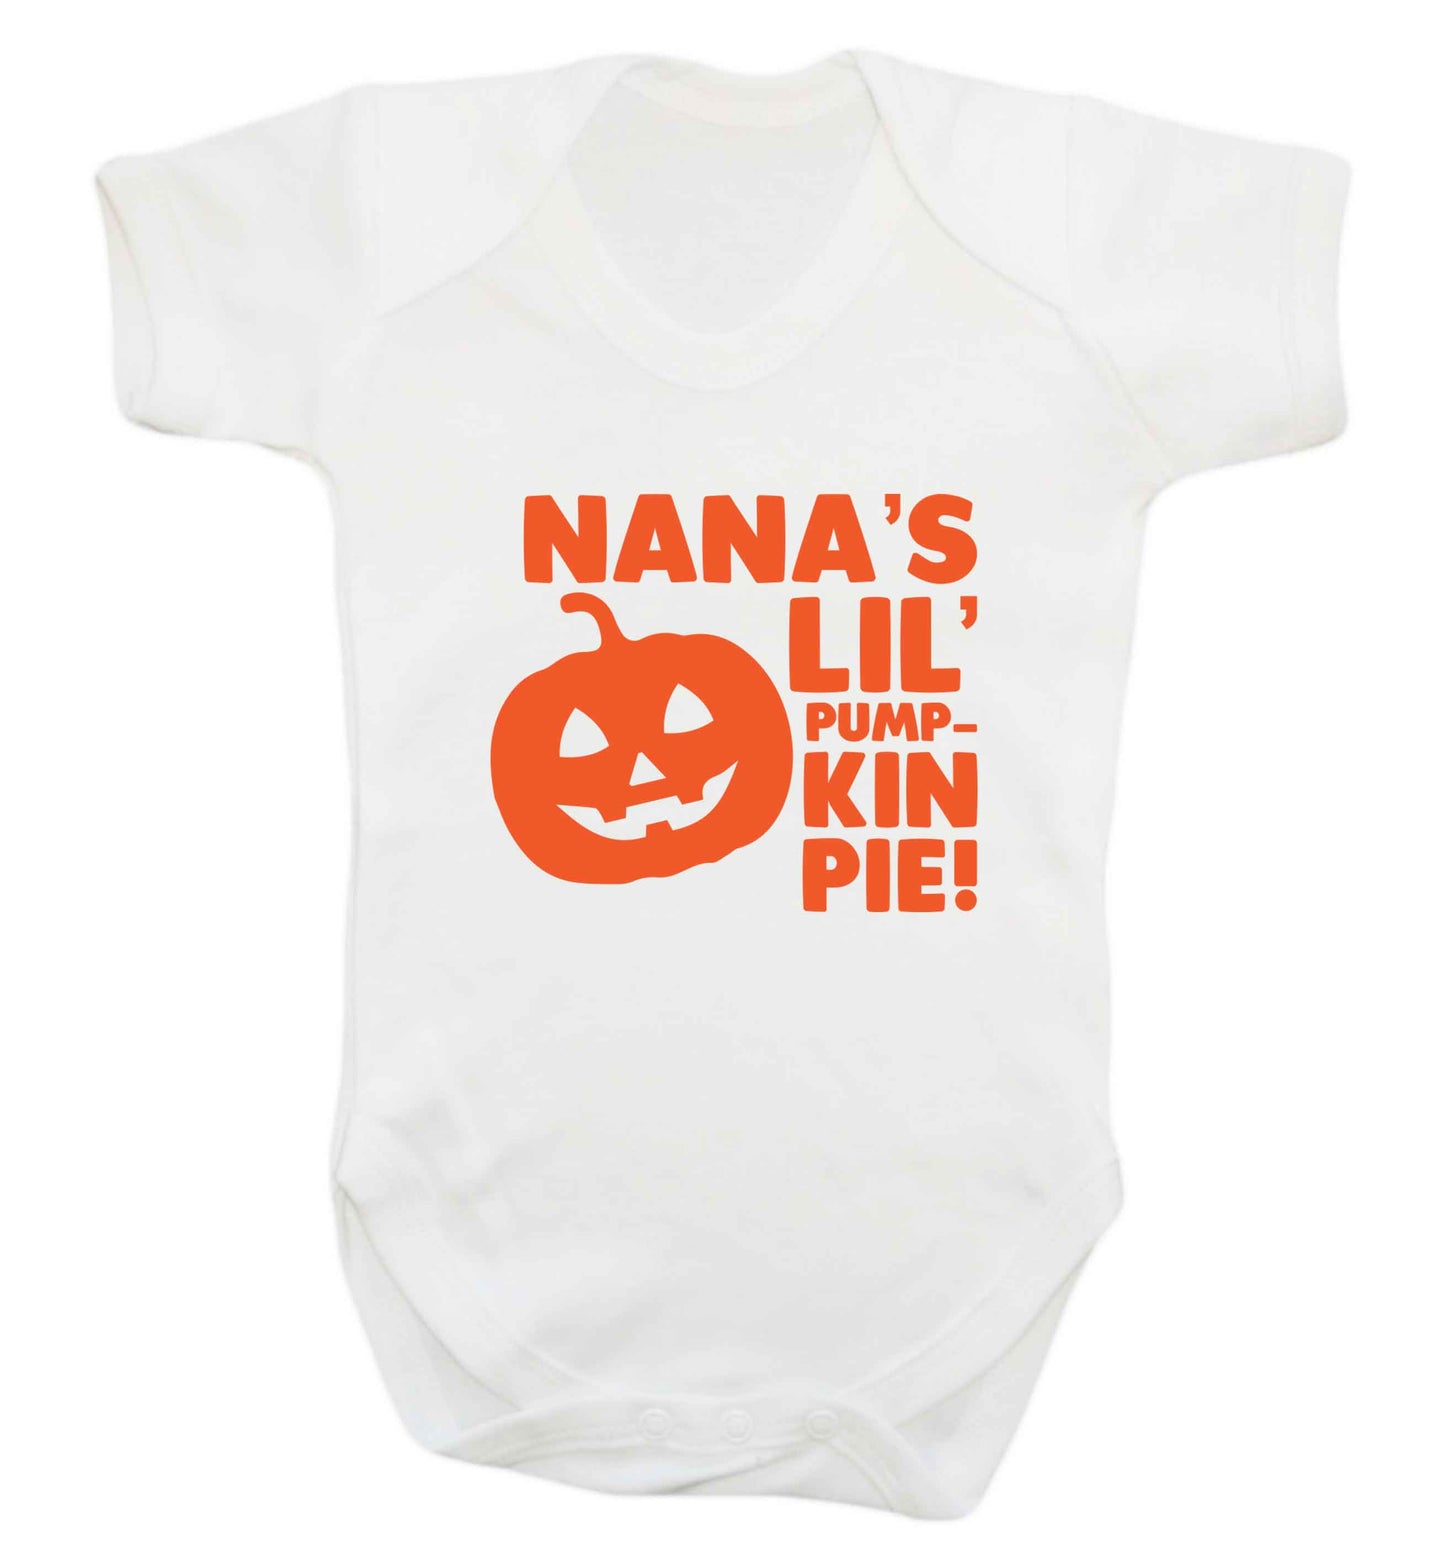 Nana's lil' pumpkin pie baby vest white 18-24 months